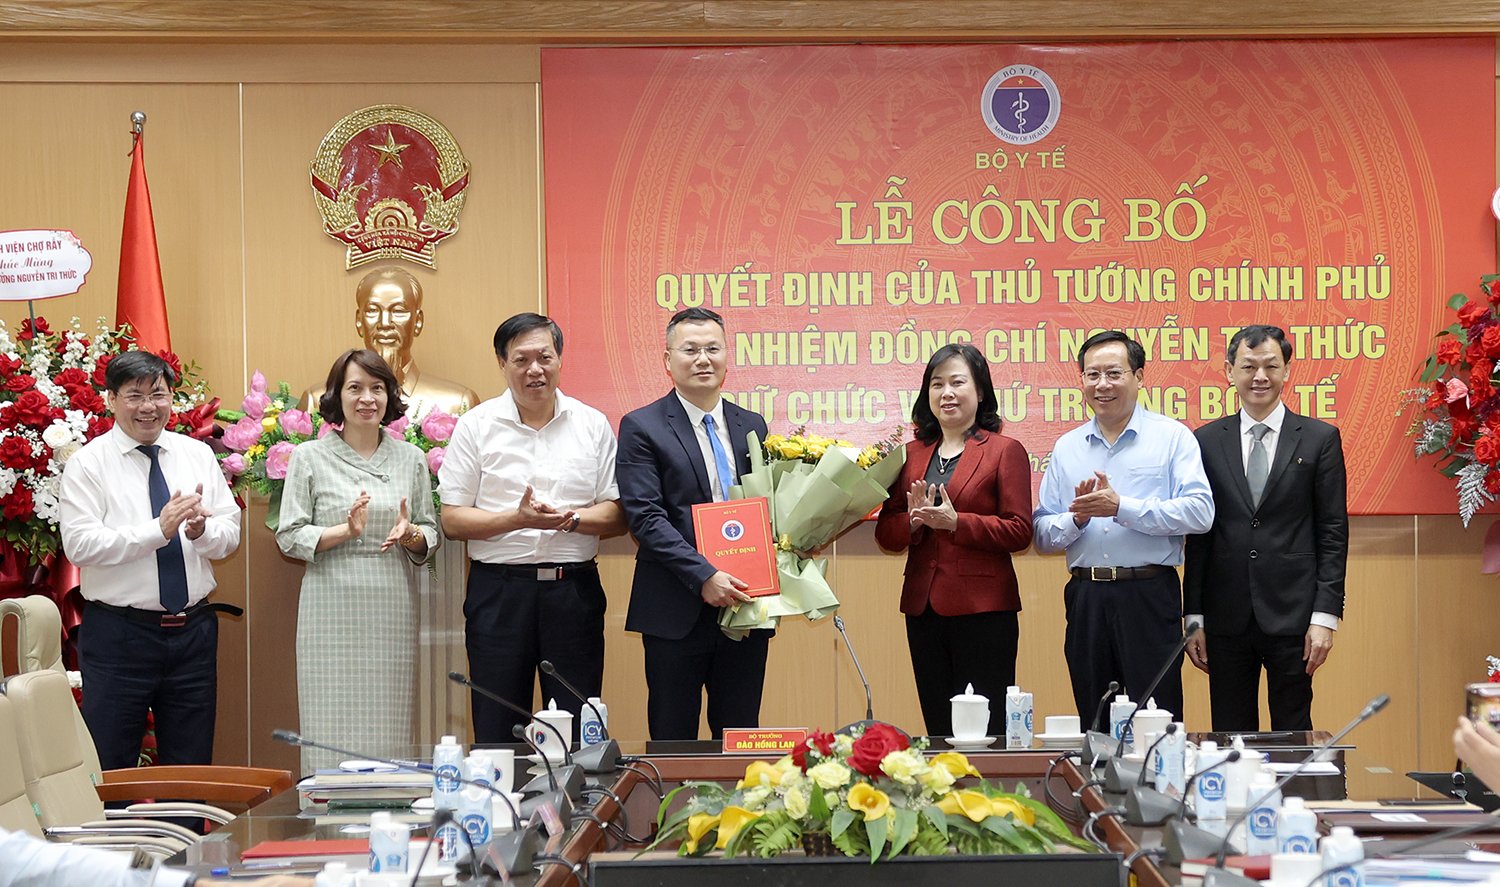 Bộ trưởng Bộ Y tế bổ nhiệm ông Nguyễn Toàn Thắng giữ chức Phó Chánh Văn phòng Bộ - Ảnh 2.